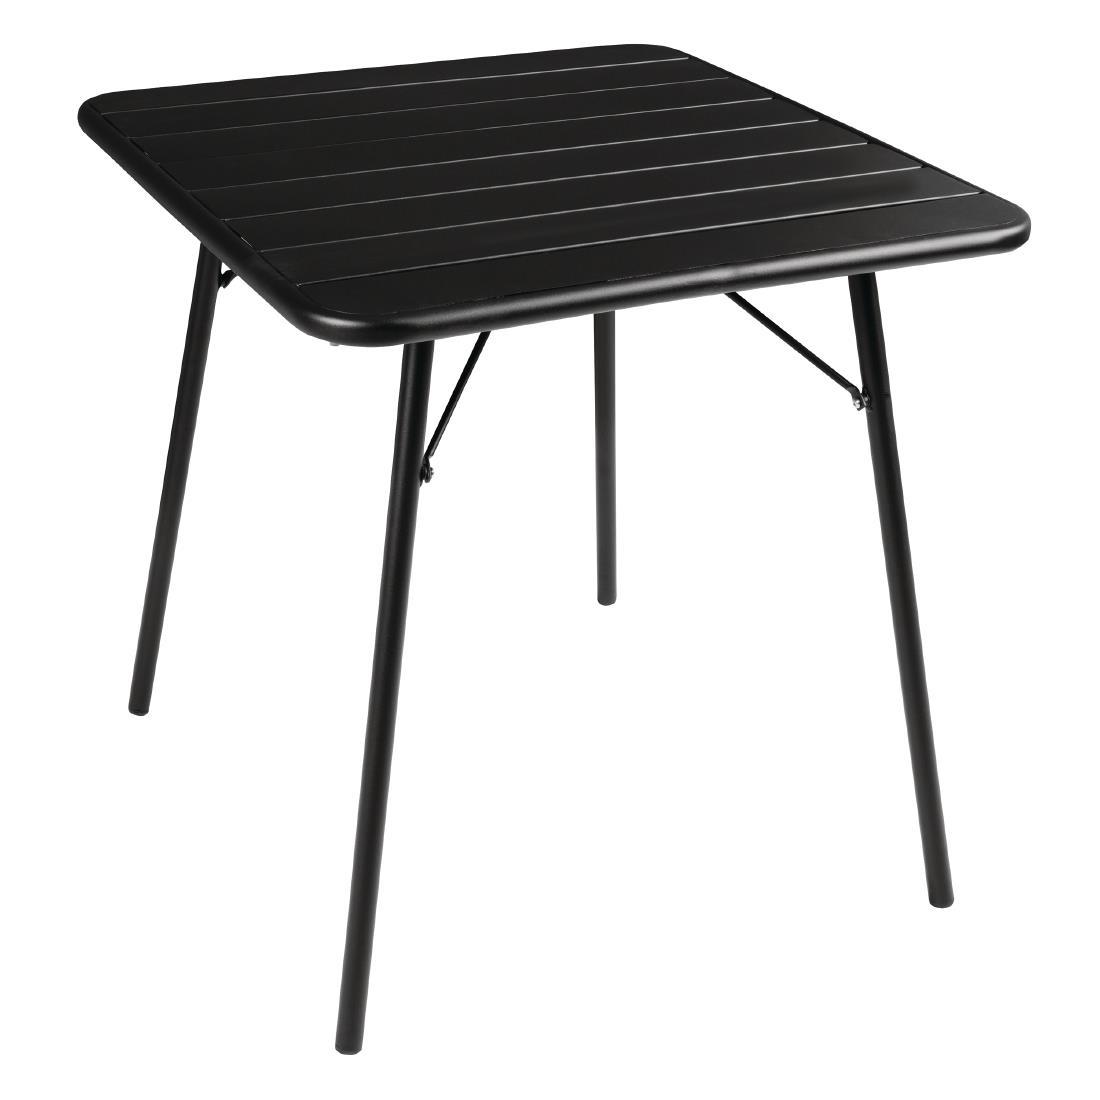 Bolero Square Slatted Steel Table Black 700mm - CS731  - 1